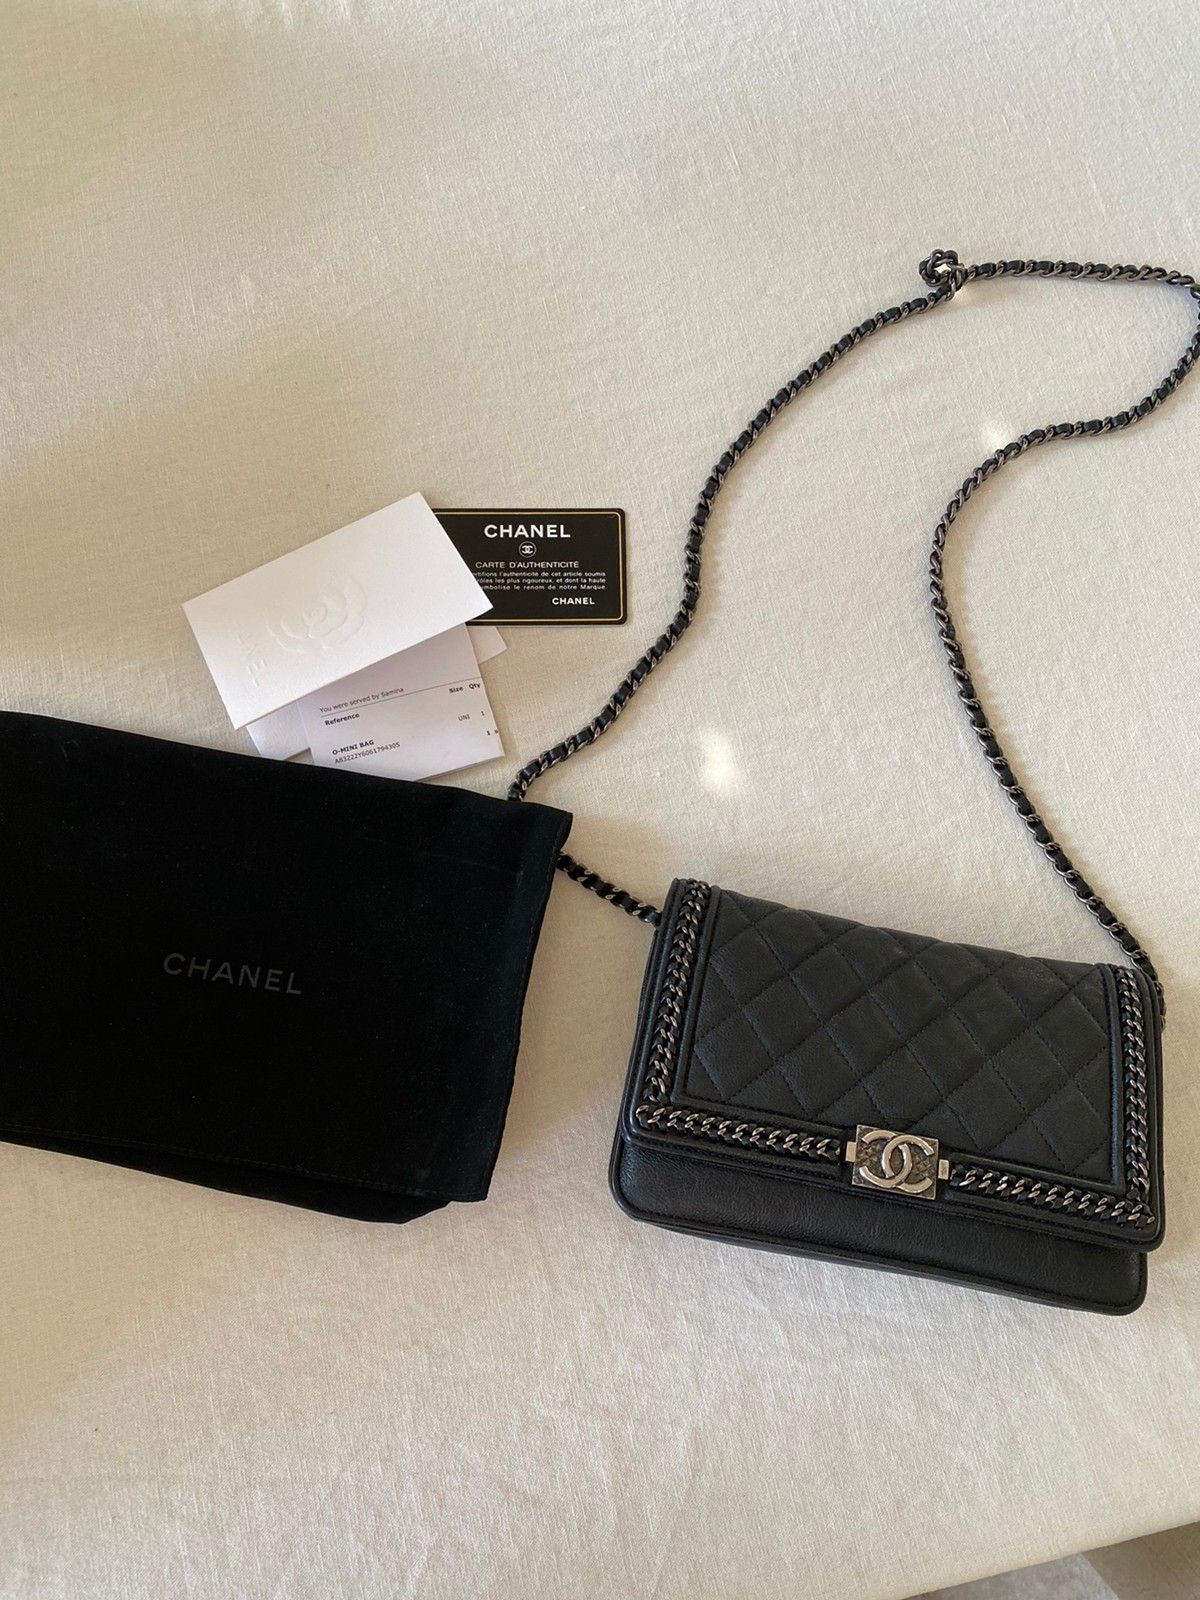 Chanel o-mini sac - strøken - med alt, FINN.no